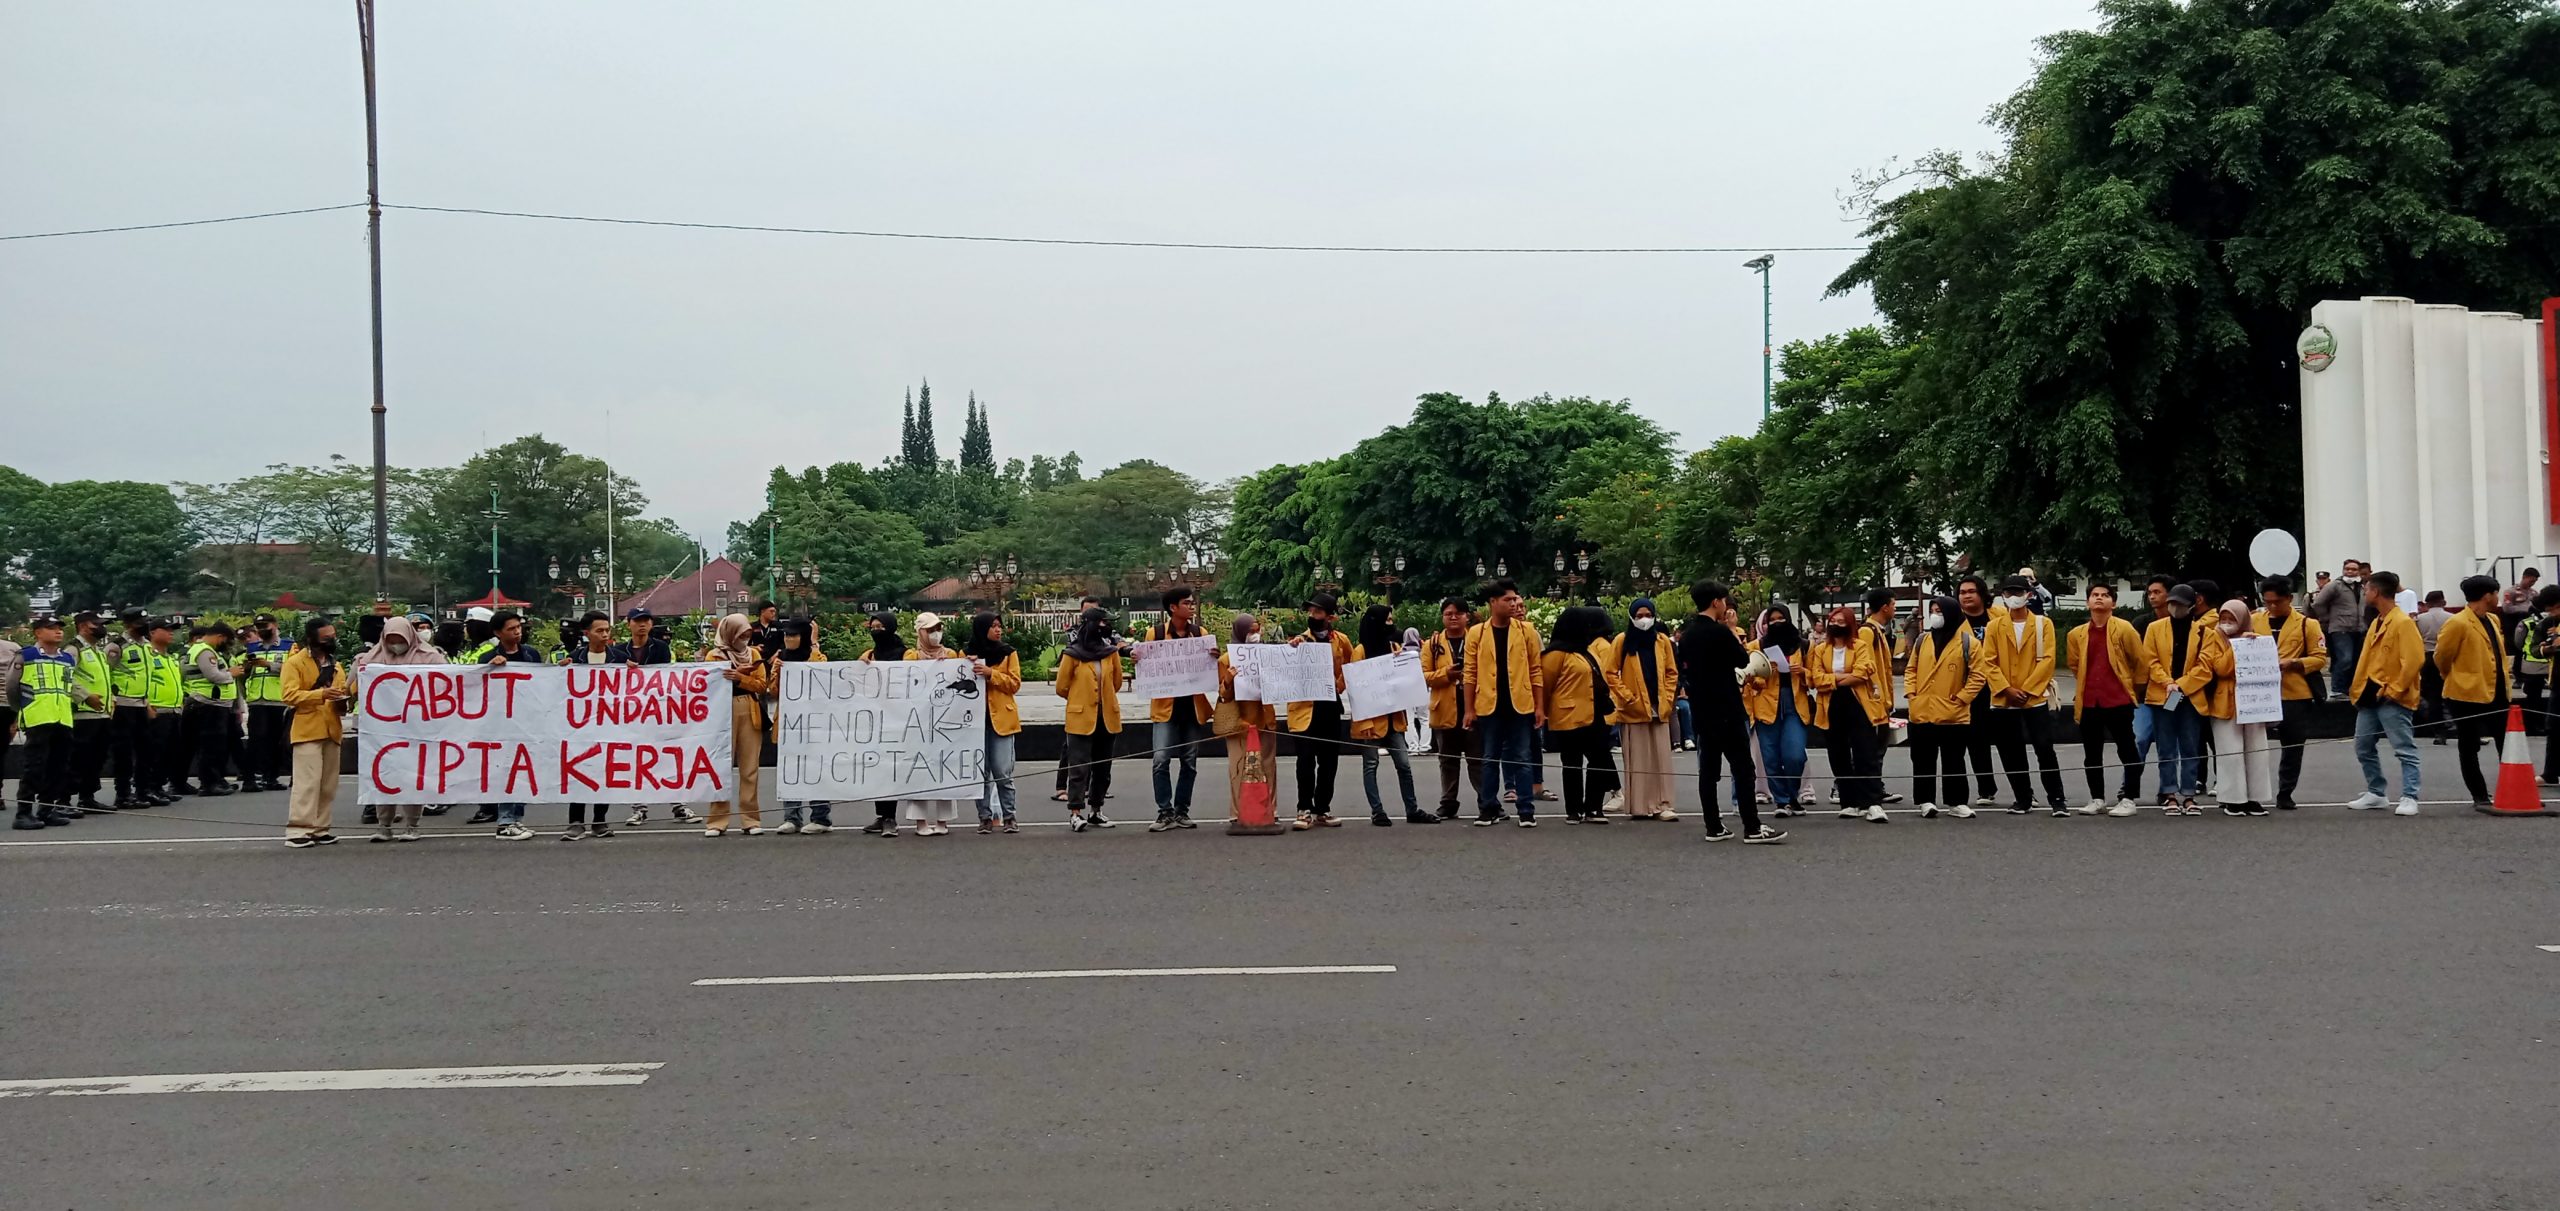 Pekik Mahasiswa Banyumas Pada Aksi May Day: UU Cipta Kerja Menyengsarakan Buruh